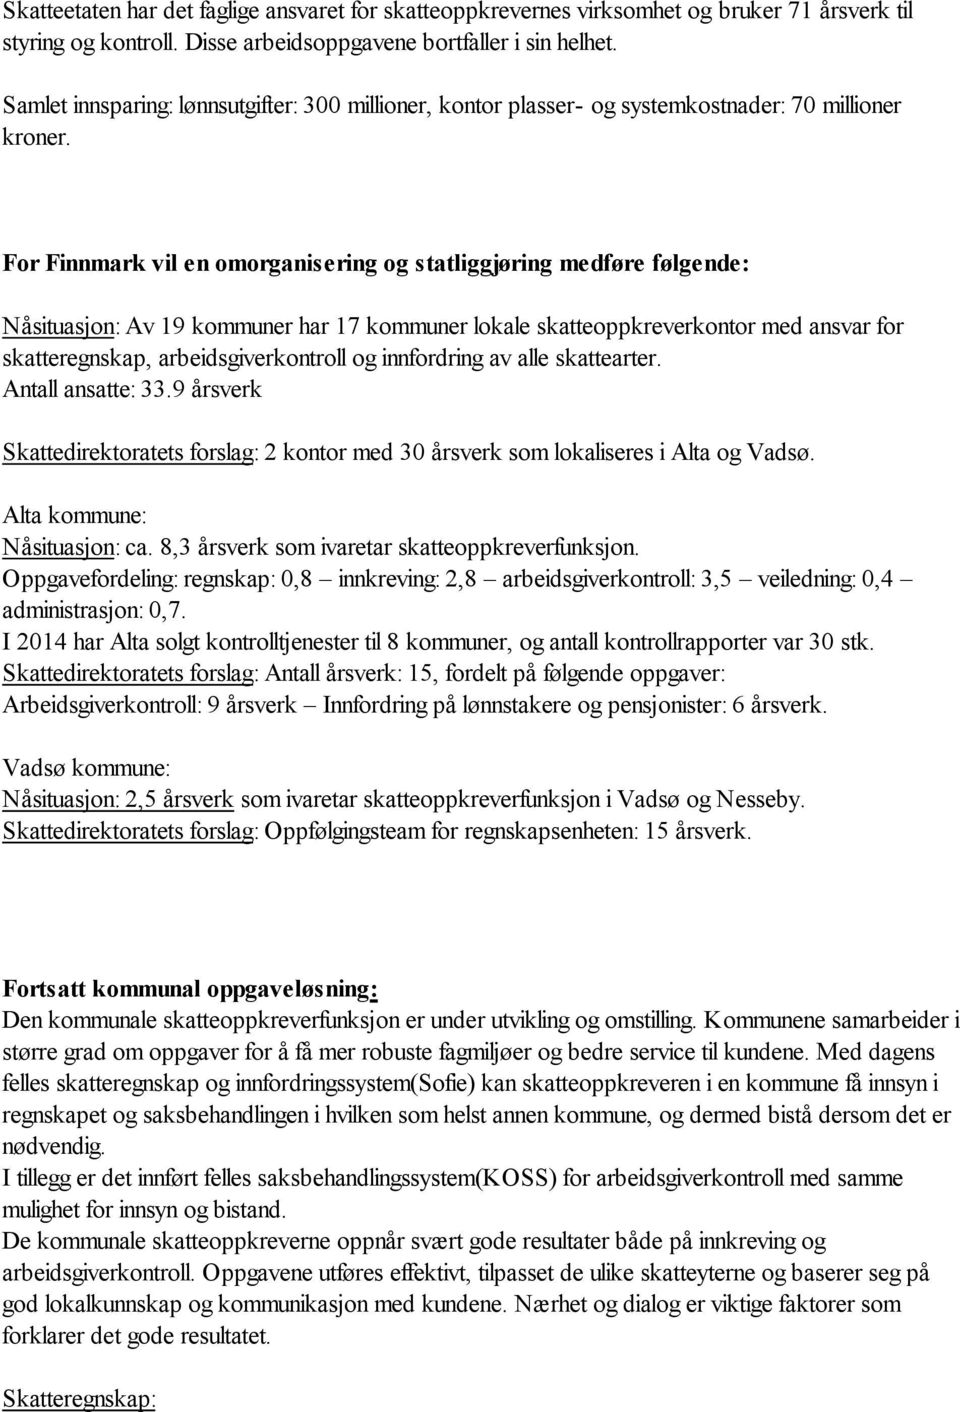 For Finnmark vil en omorganisering og statliggjøring medføre følgende: Nåsituasjon: Av 19 kommuner har 17 kommuner lokale skatteoppkreverkontor med ansvar for skatteregnskap, arbeidsgiverkontroll og